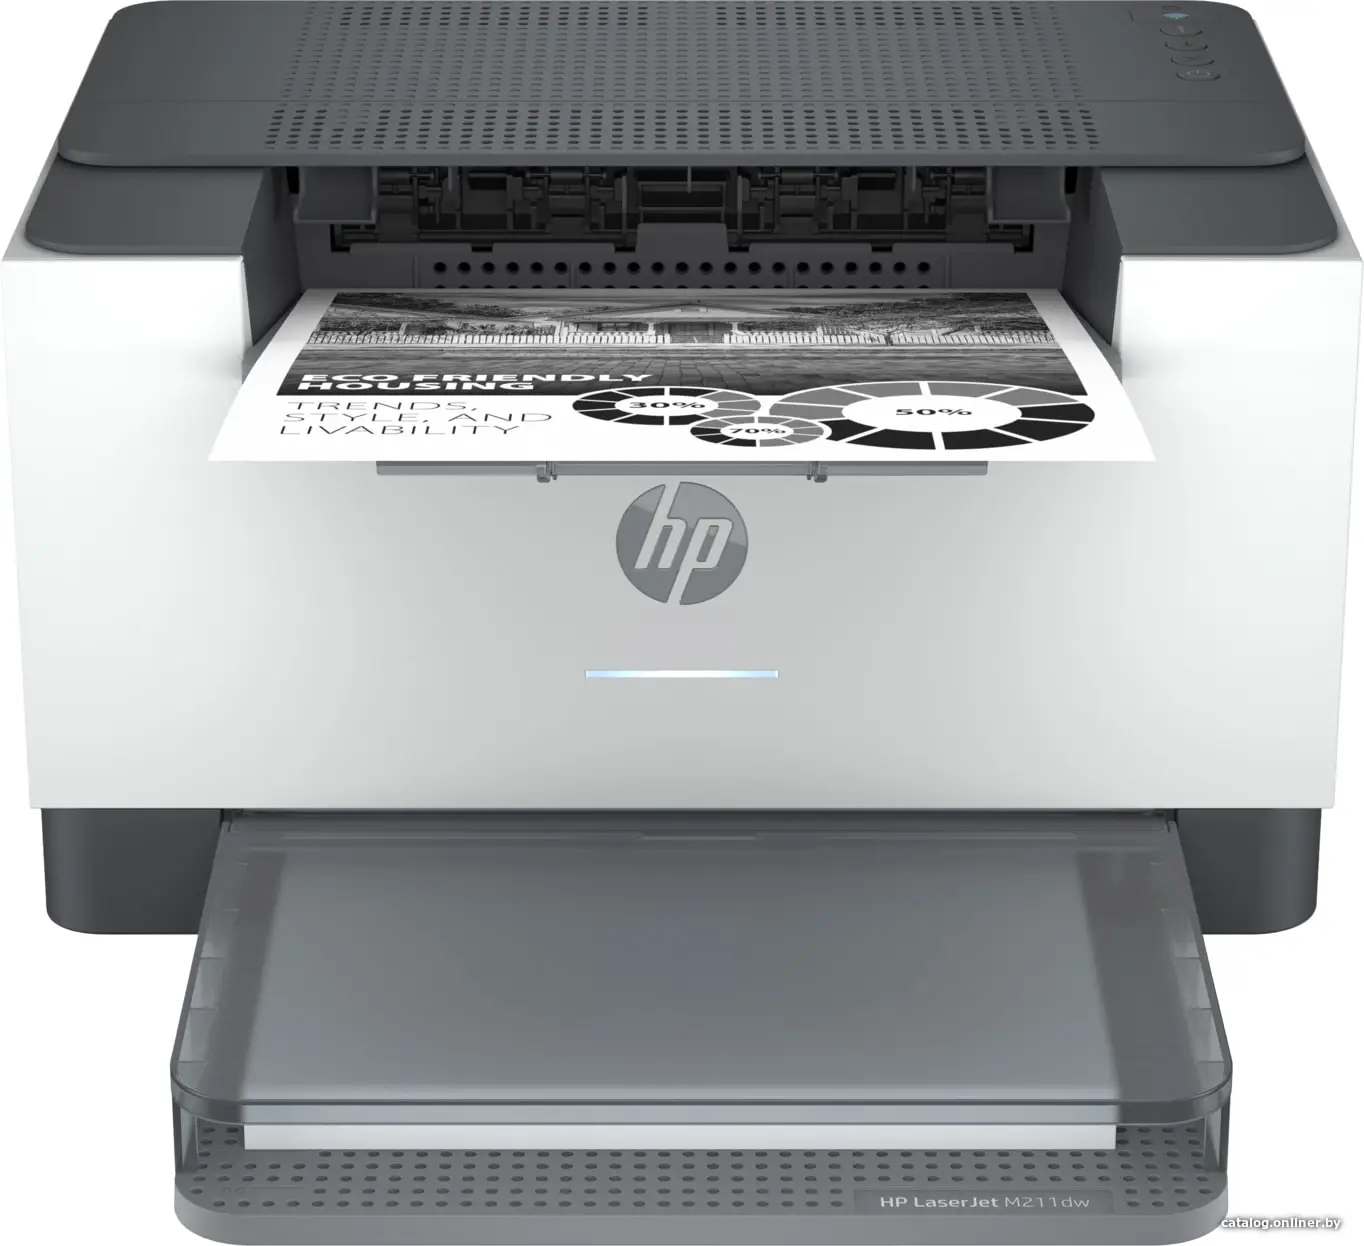 Купить Принтер HP LaserJet M211dw (9YF83A), цена, опт и розница